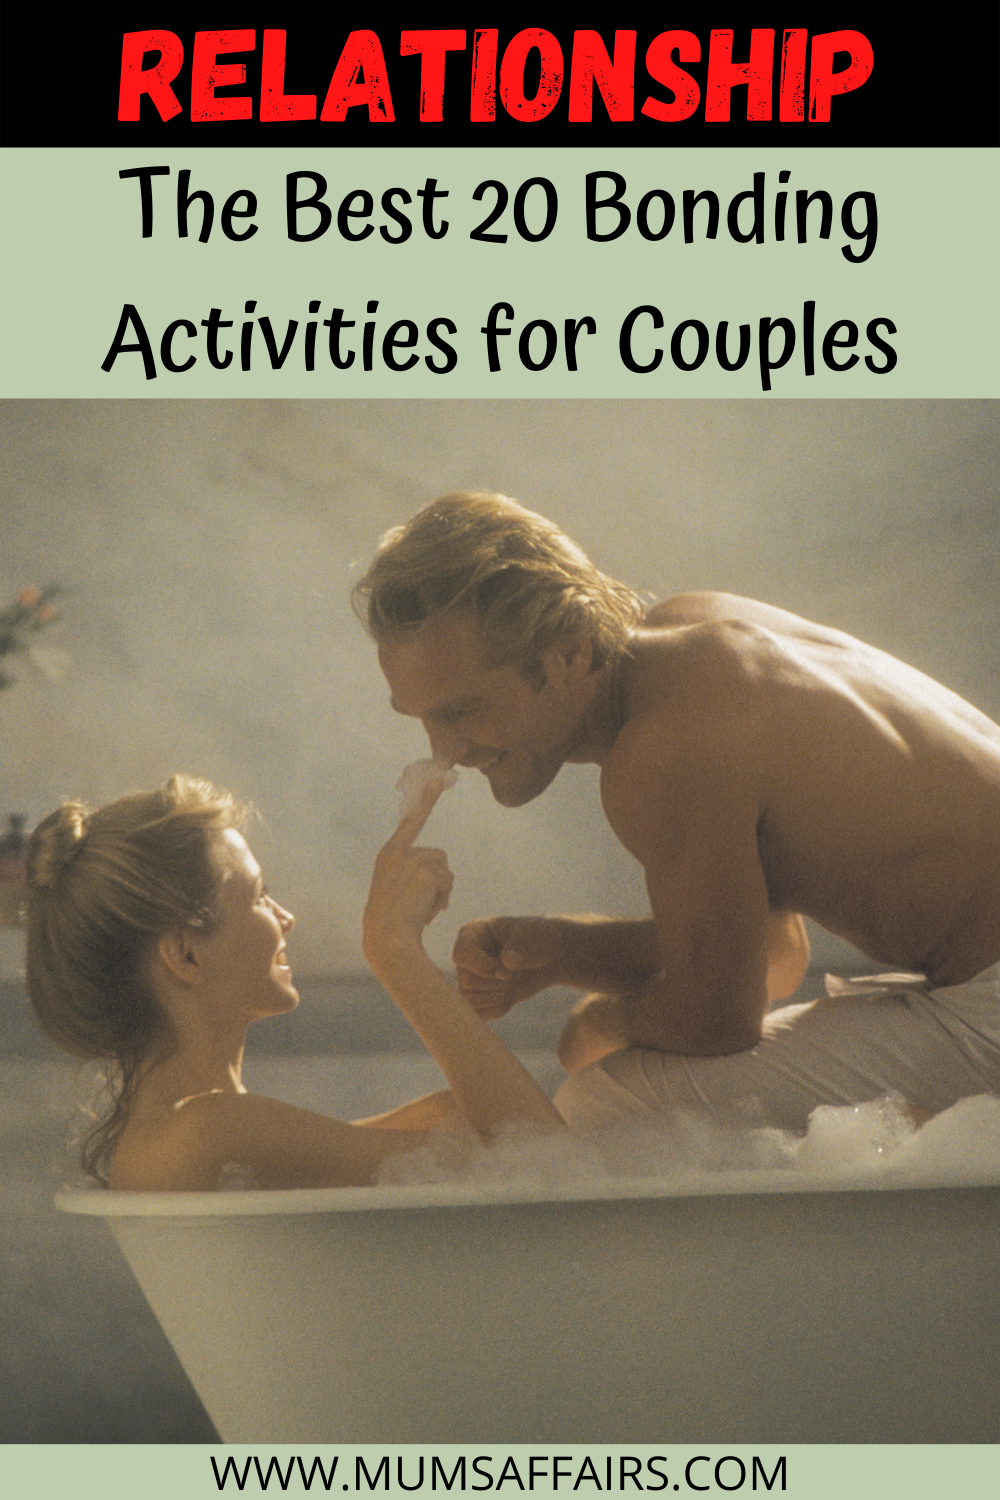 Best Bonding Activities for Couples